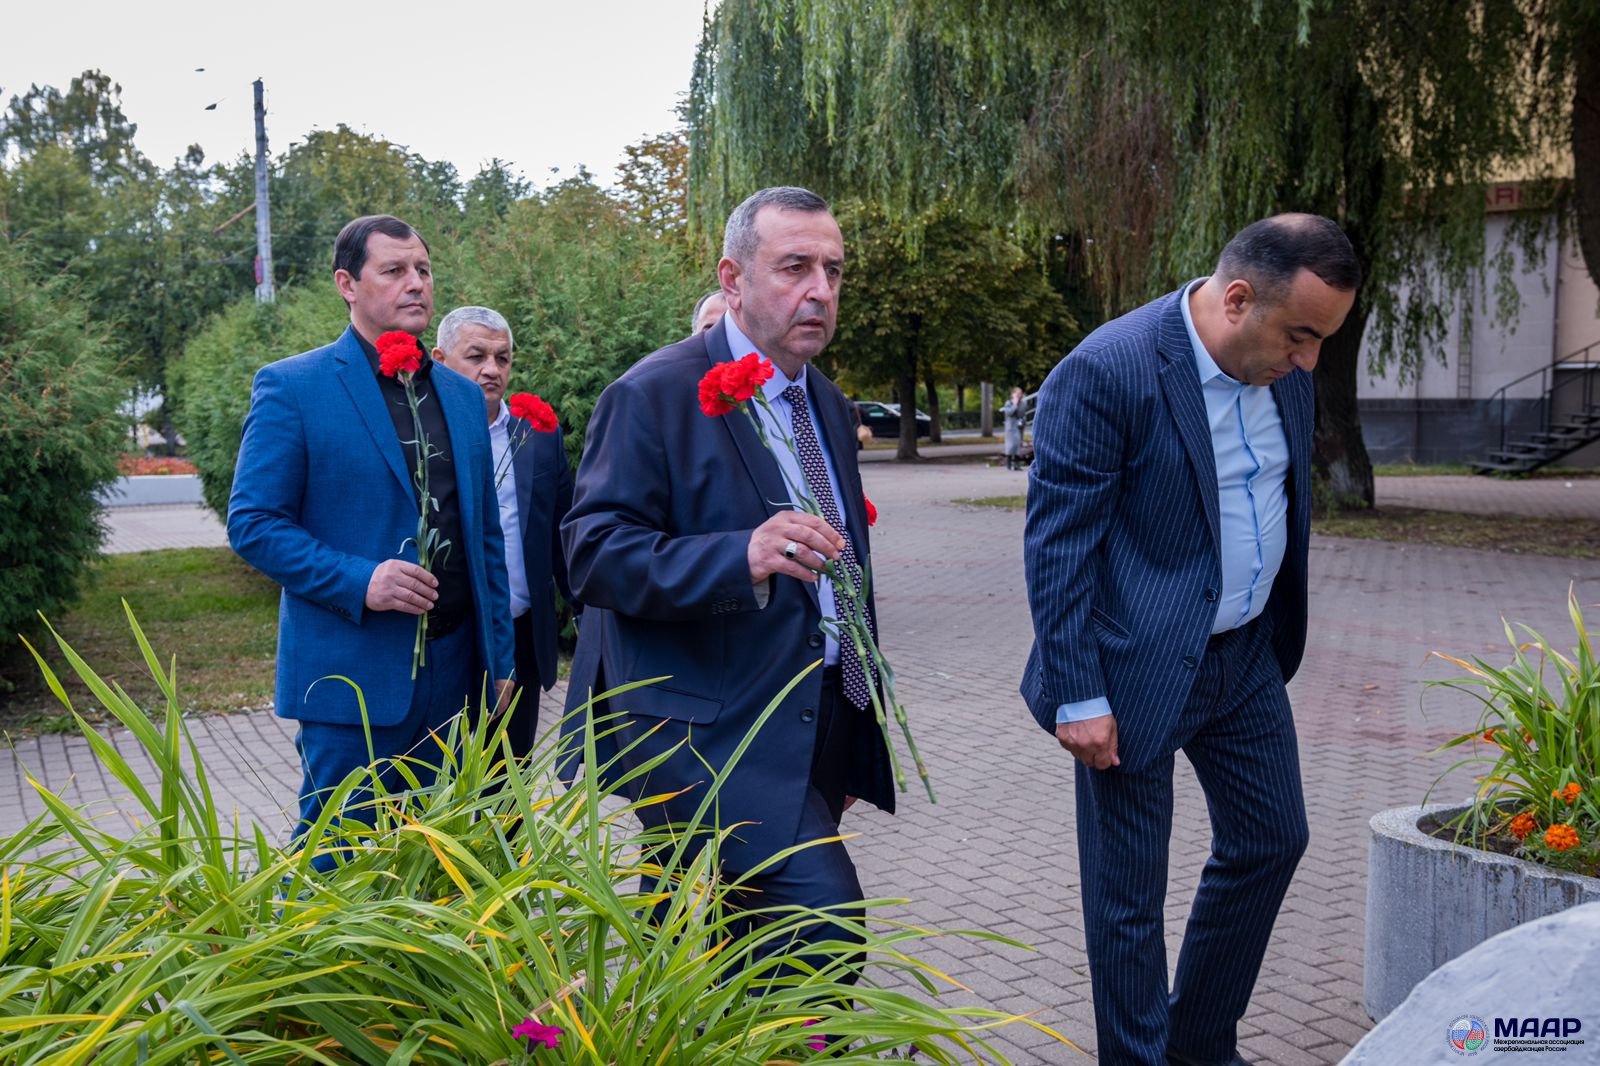 Состоялся рабочий визит представителей КС "МААР" в Калужскую область